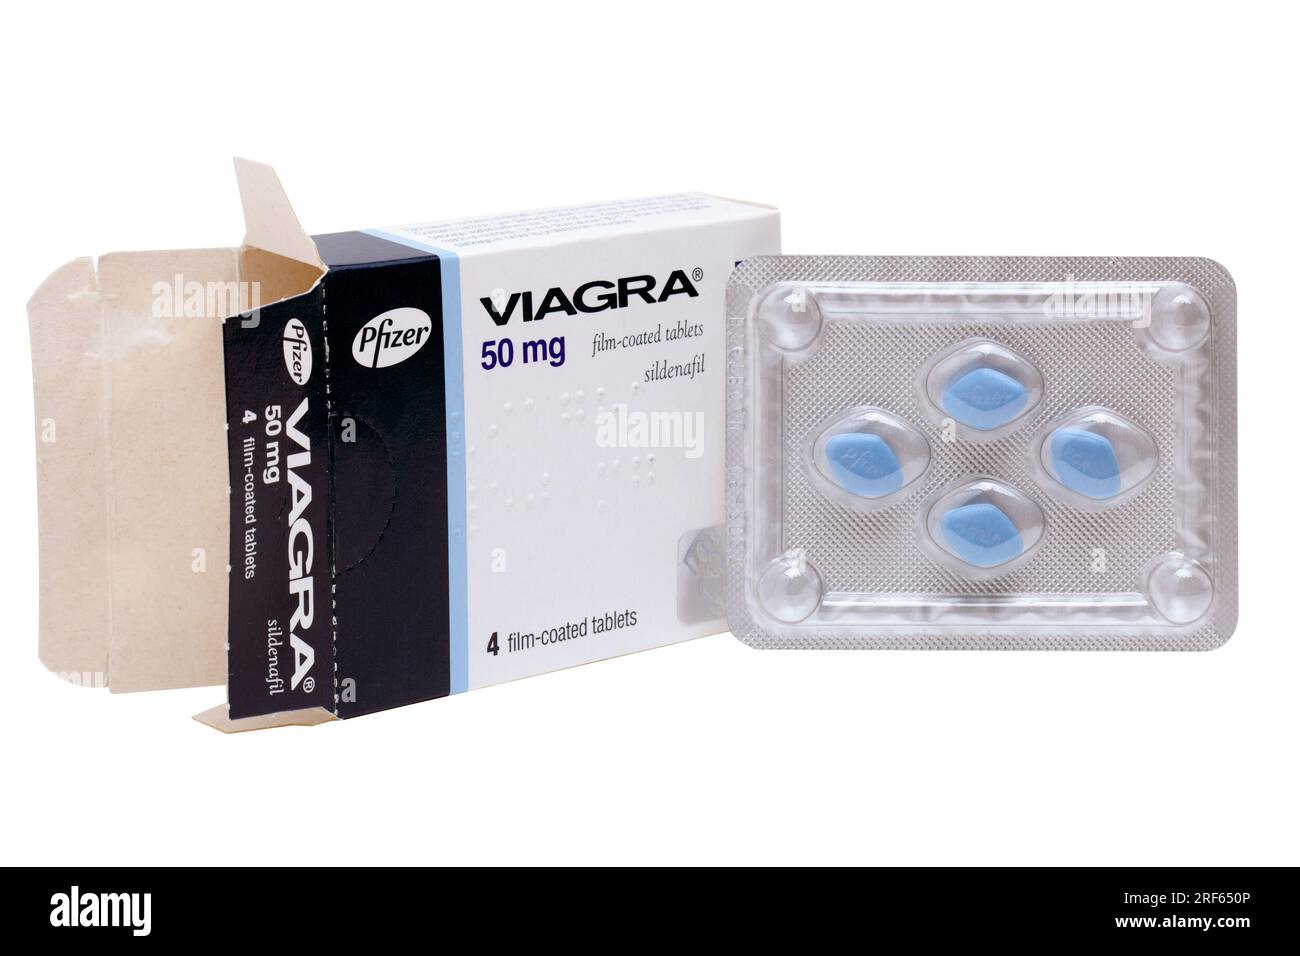 Scatola e confezione di compresse rivestite con film di Viagra Pfizer 4 da 50 mg, Sildenafil Foto Stock